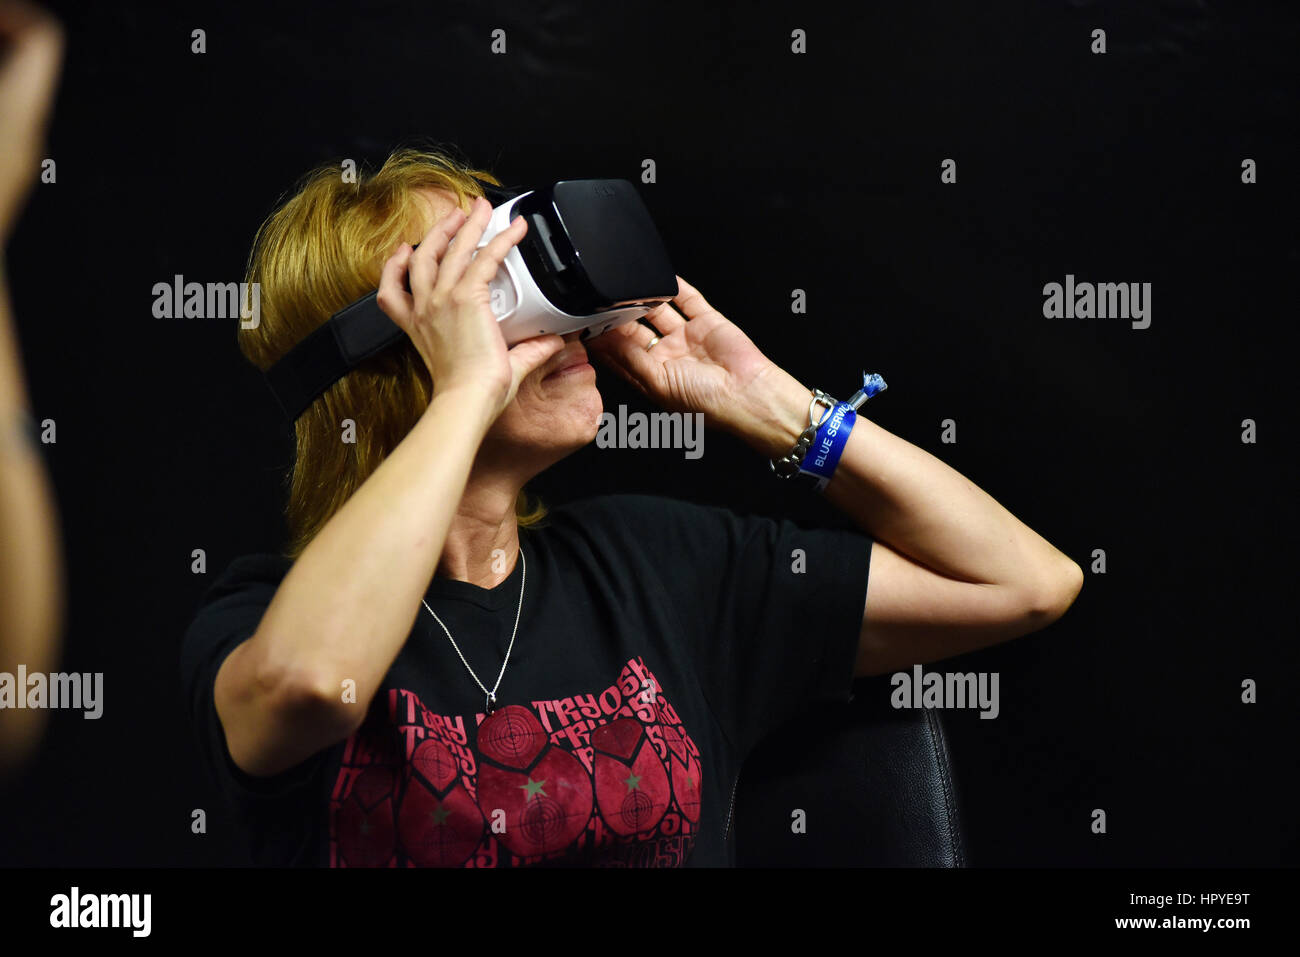 CLUJ-NAPOCA, Rumänien - 6. August 2016: Frau versucht virtual-Reality-Samsung Gear VR Kopfhörer und Hand Kontrollen während der virtual-Reality-Exposition am Stockfoto